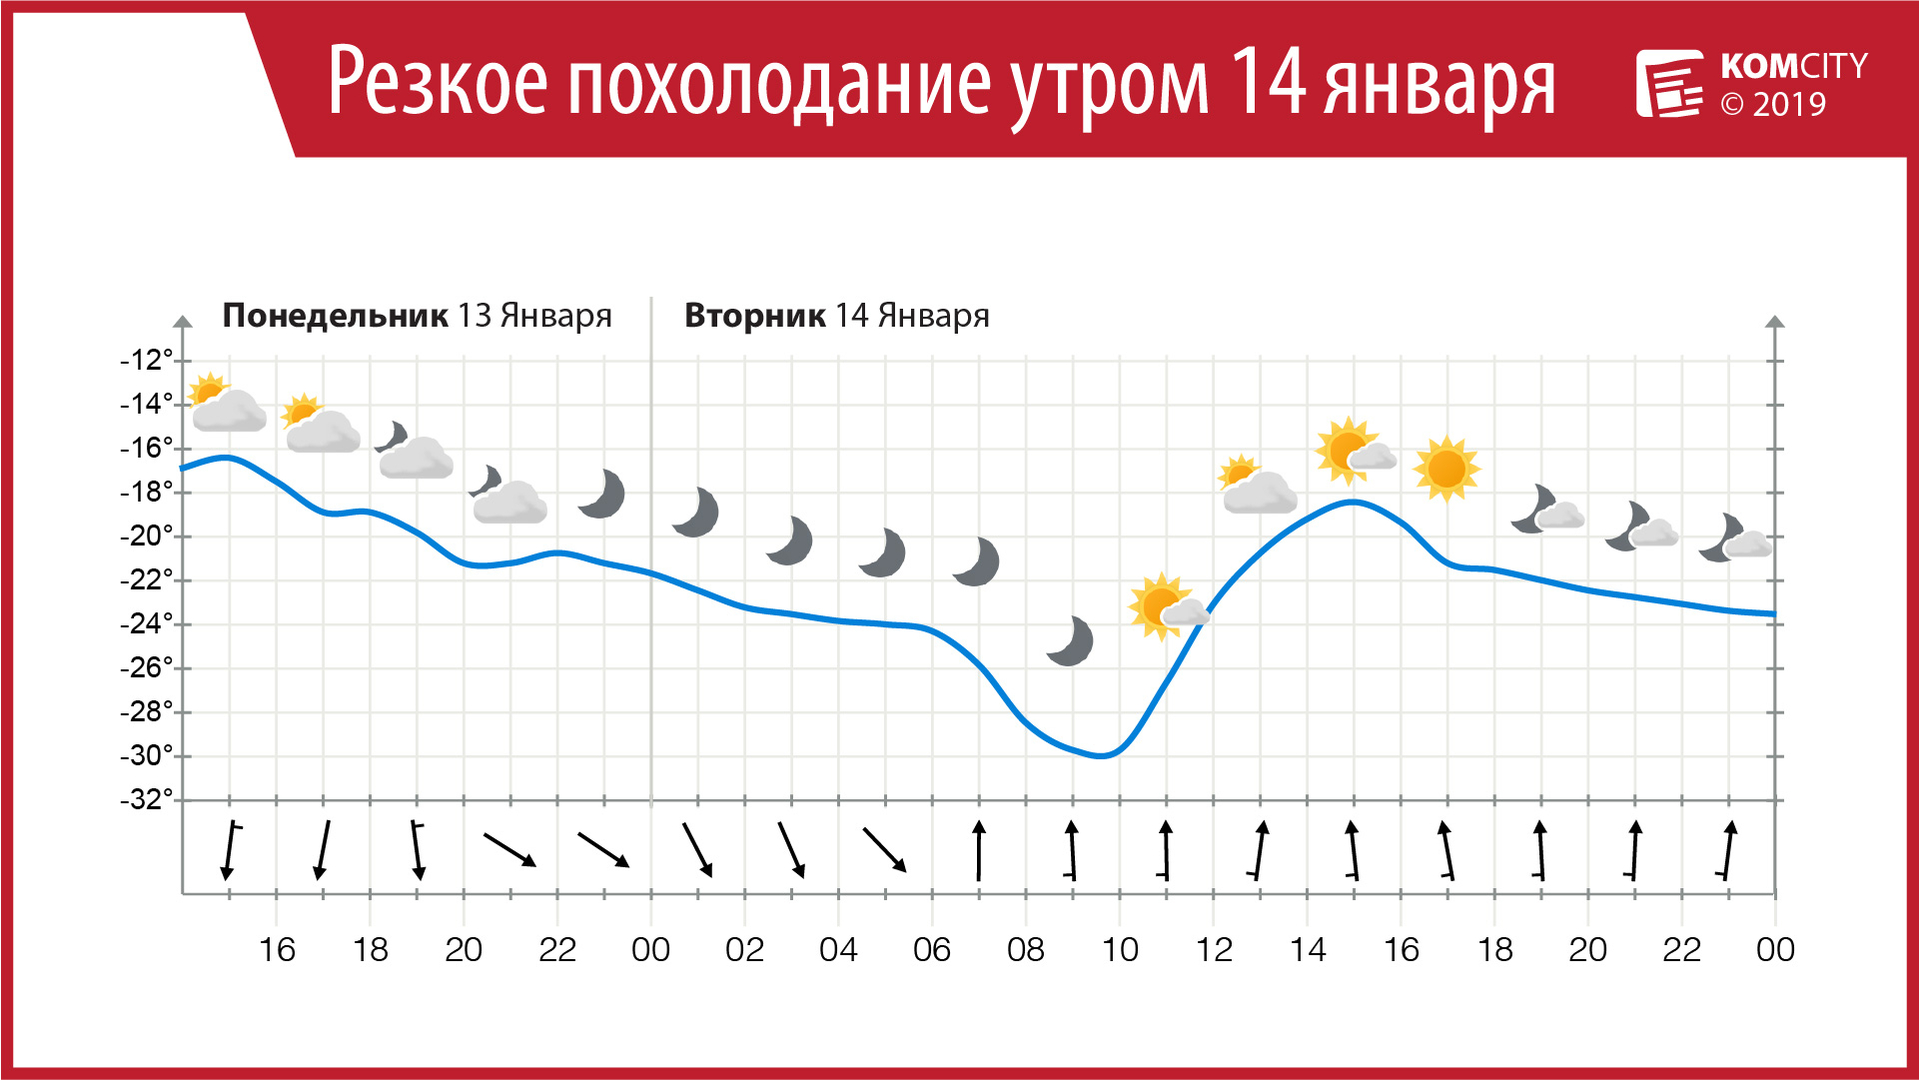 Завтра утром в Комсомольске-на-Амуре ожидается резкое похолодание